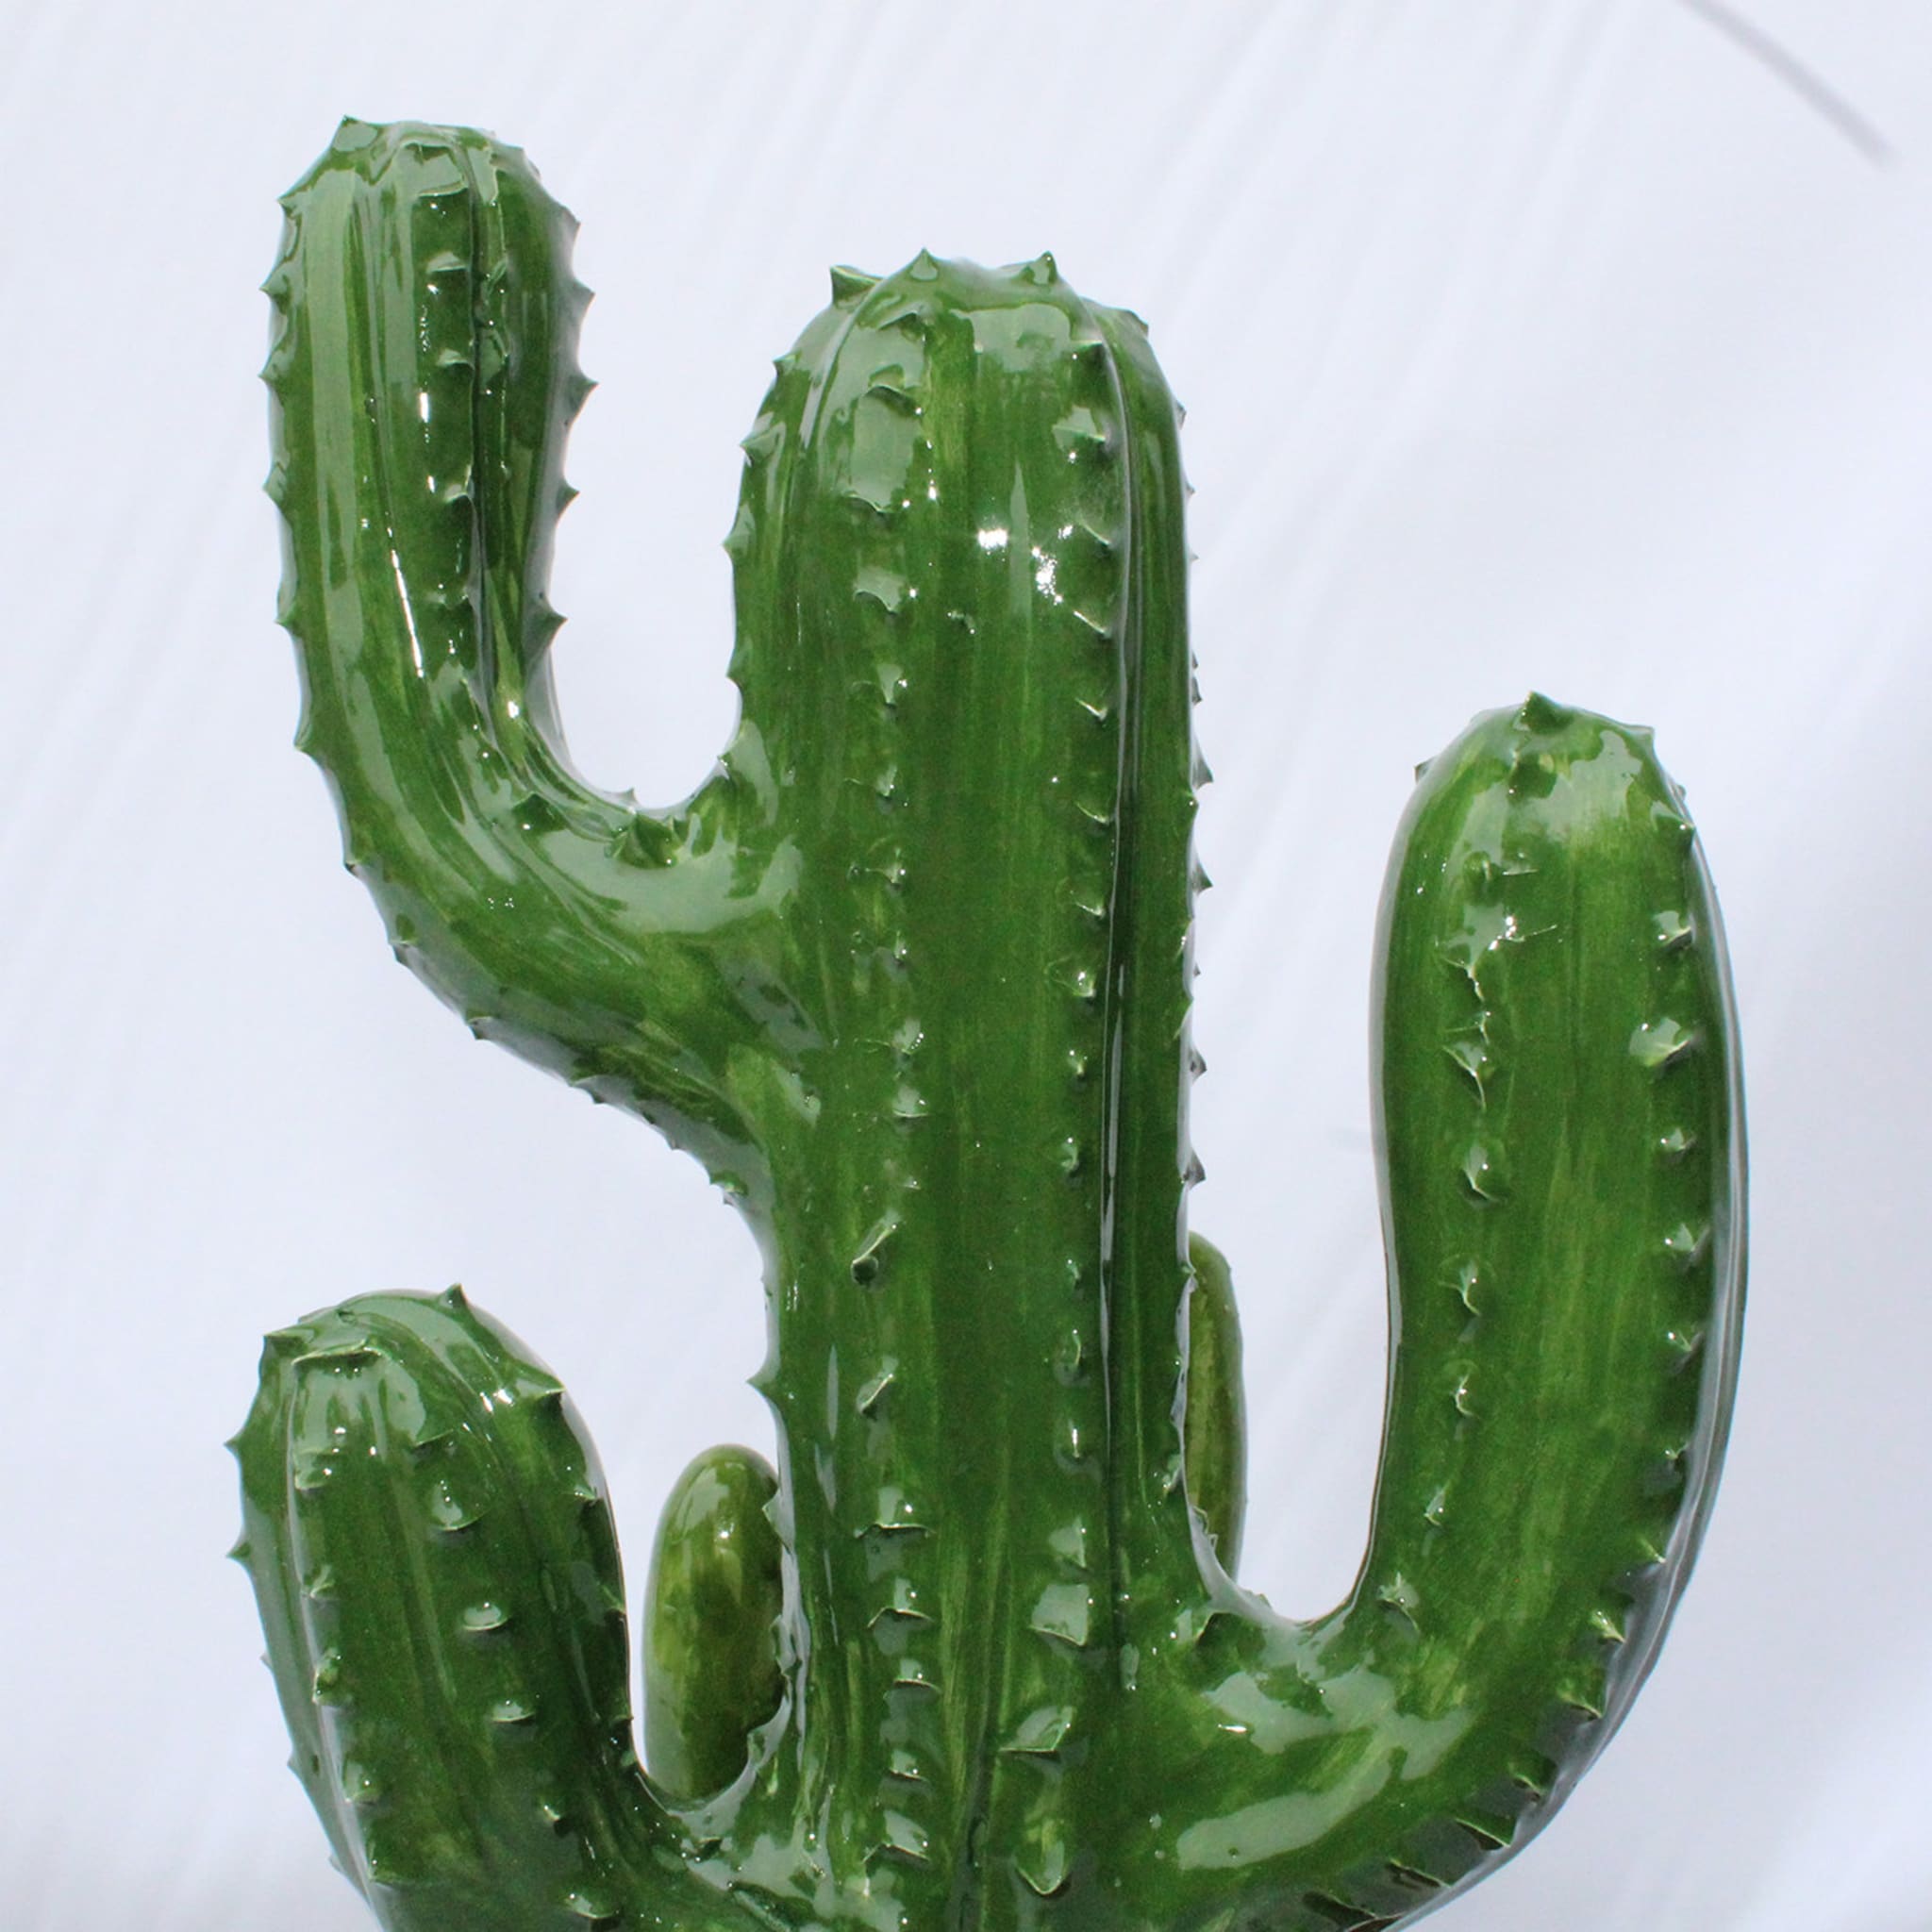 Cactus Sculpture #2 - Alternative view 3